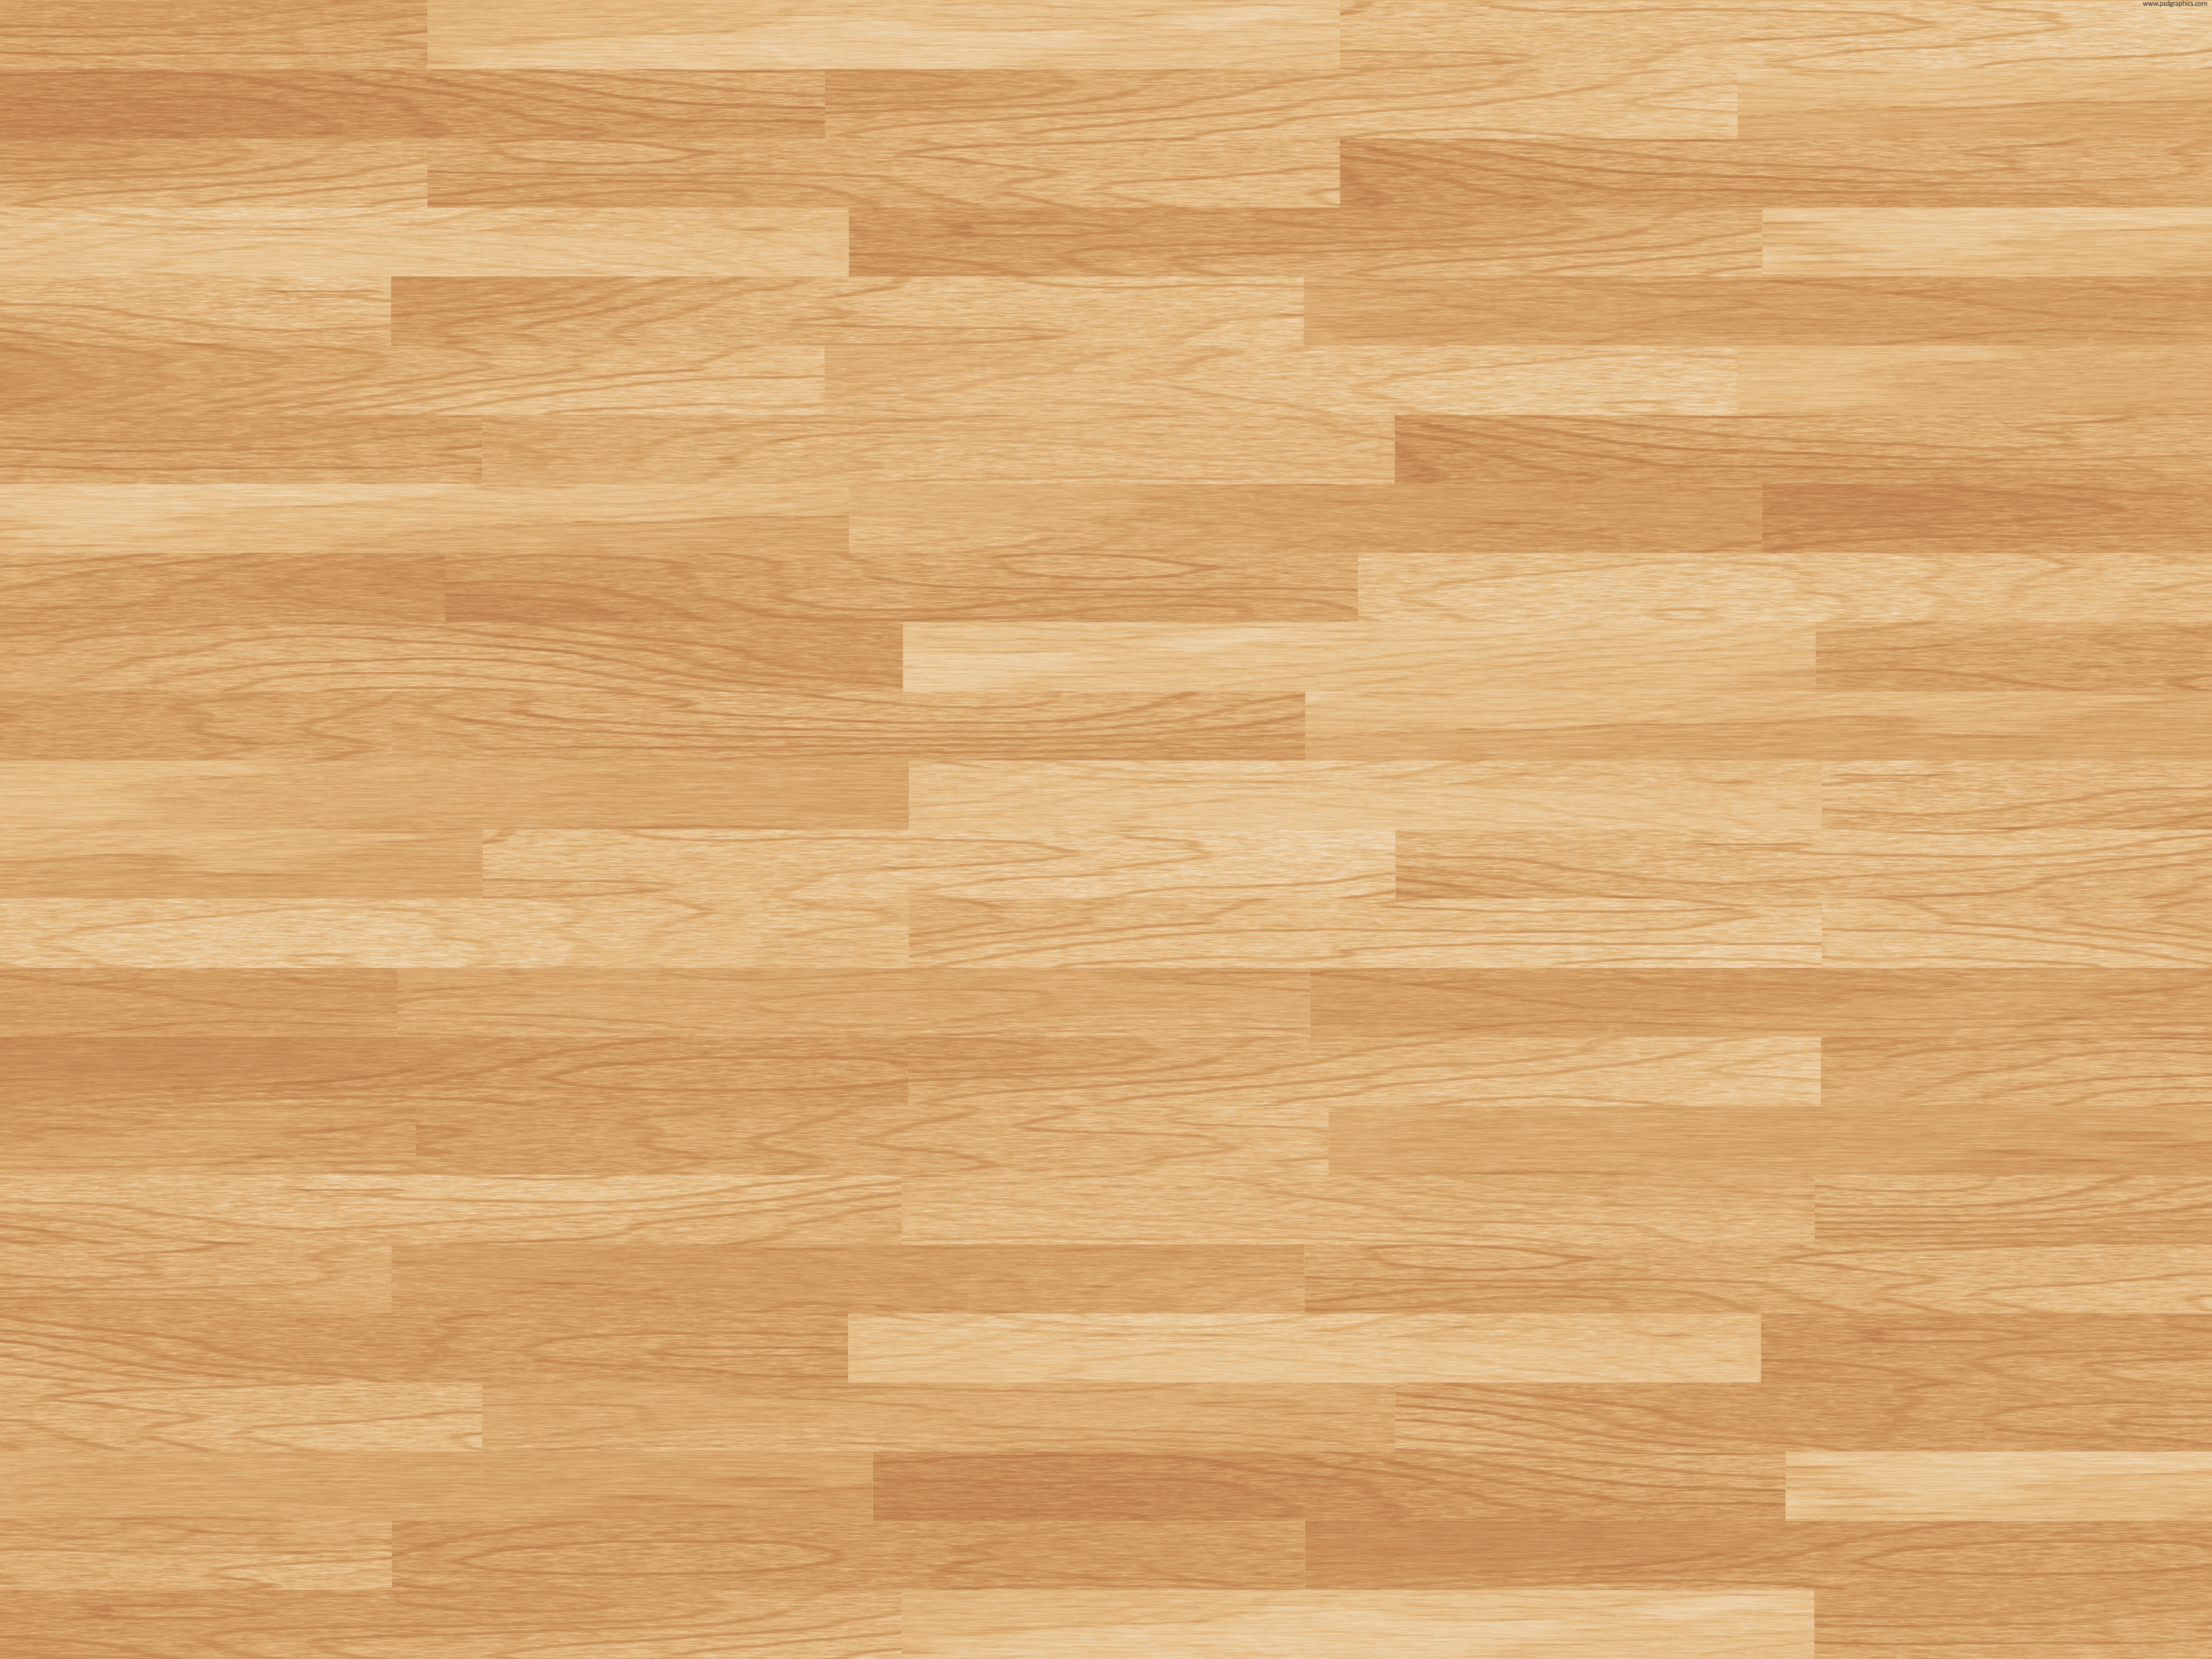 Wooden Floor Texture Cherry Wood Dark